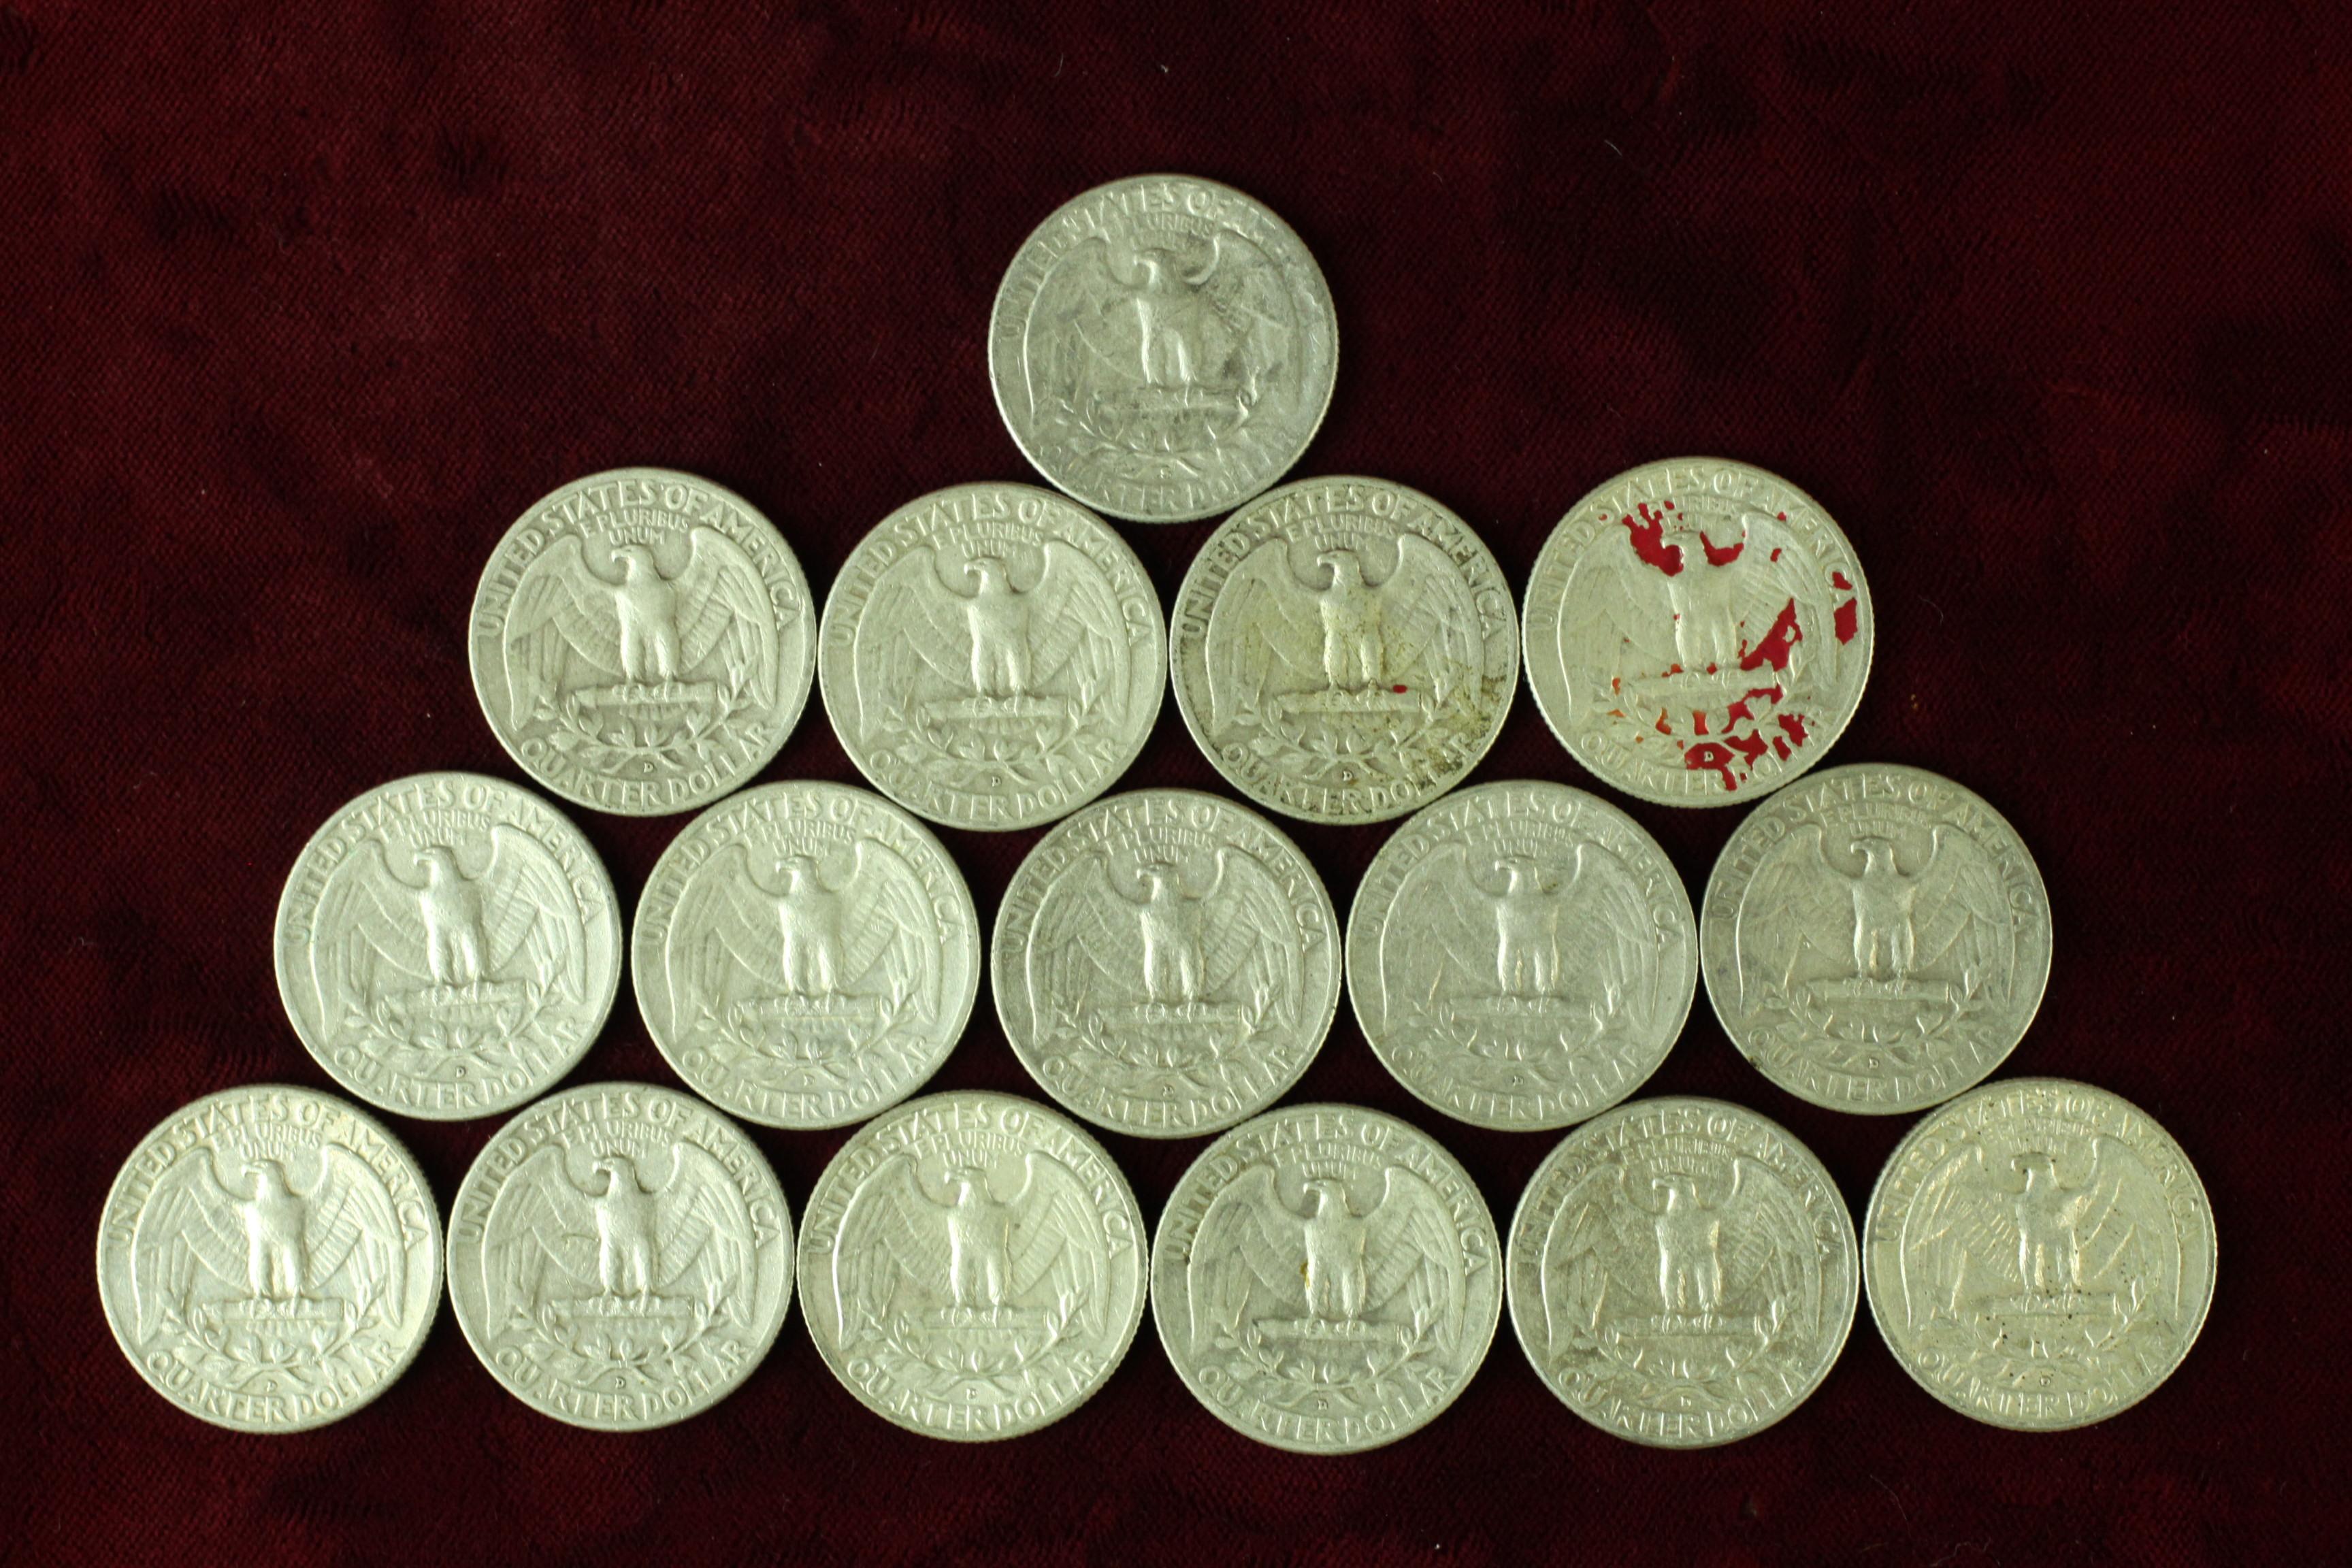 16 Washington Silver Quarters, various dates/mints